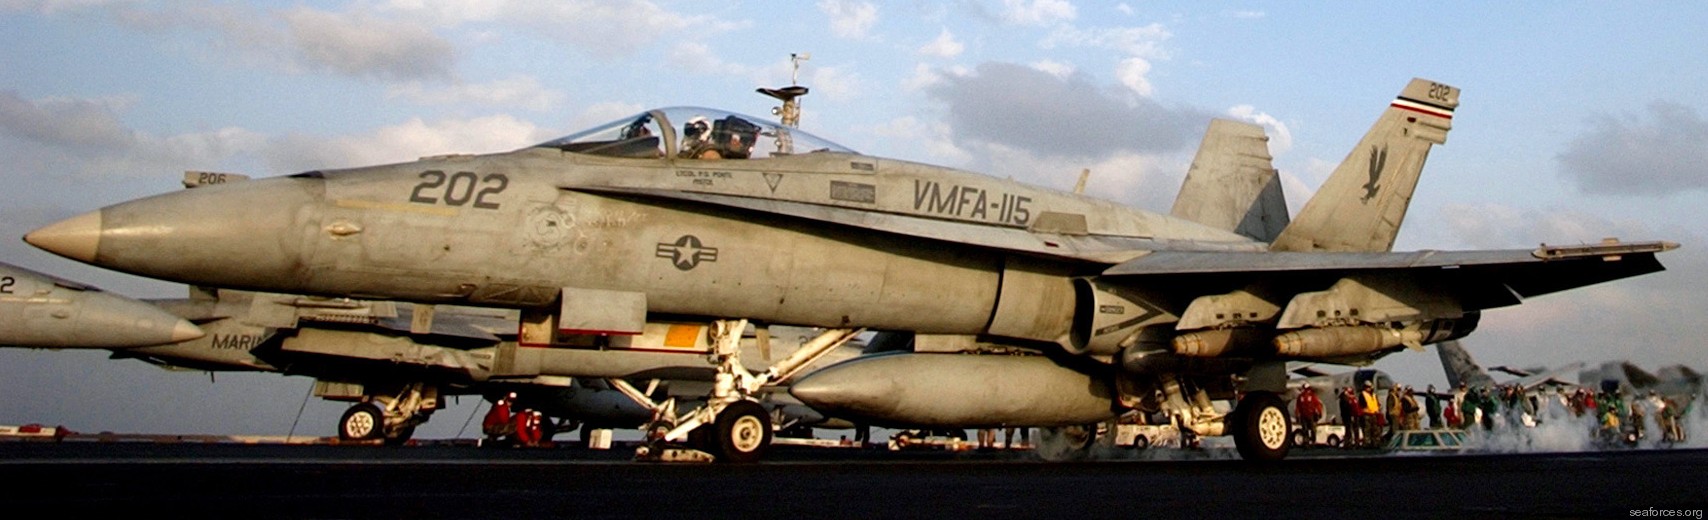 vmfa-115 silver eagles marine fighter attack squadron f/a-18a+ hornet 30